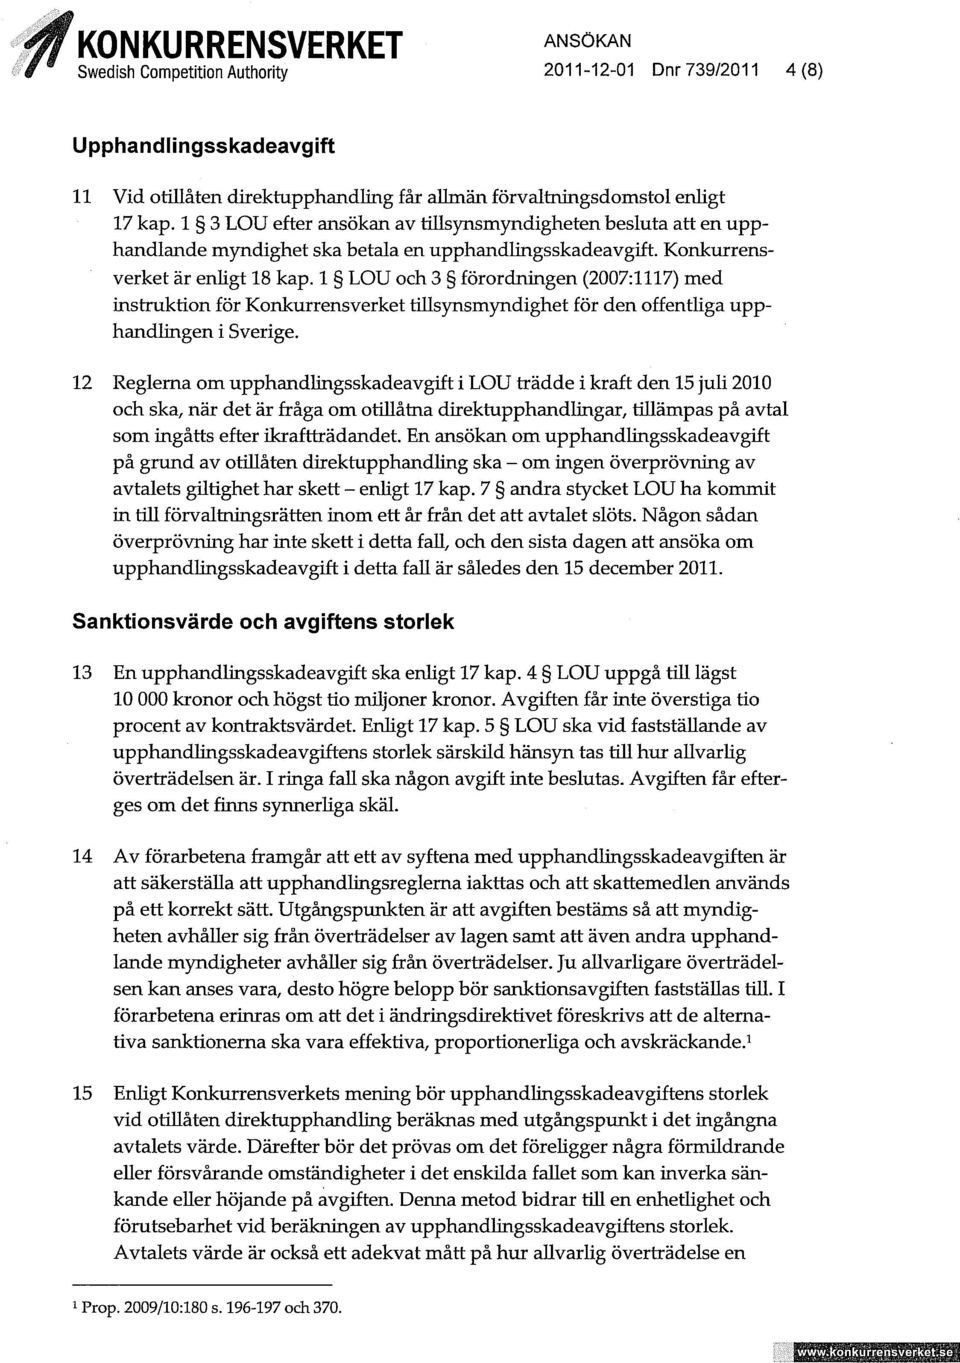 1 LOU och 3 förordningen (2007:1117) med instruktion för Konkurrensverket tillsynsmyndighet för den offentliga upphandlingen i Sverige.